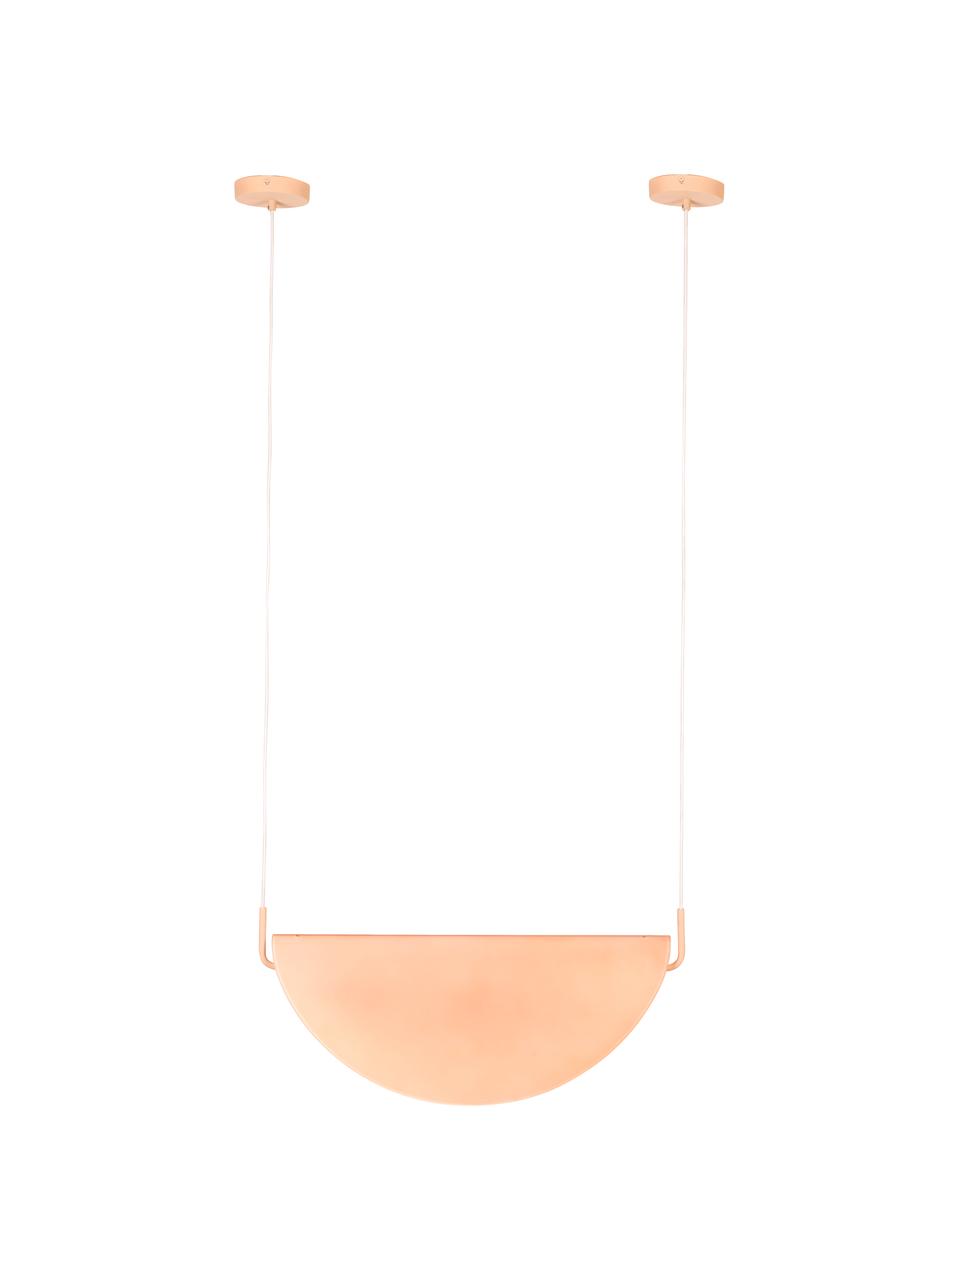 Lámpara de techo de diseño Rani, Pantalla: vidrio, Anclaje: metal recubierto, Cable: cubierto en tela, Rosa, An 74 x Al 28 cm